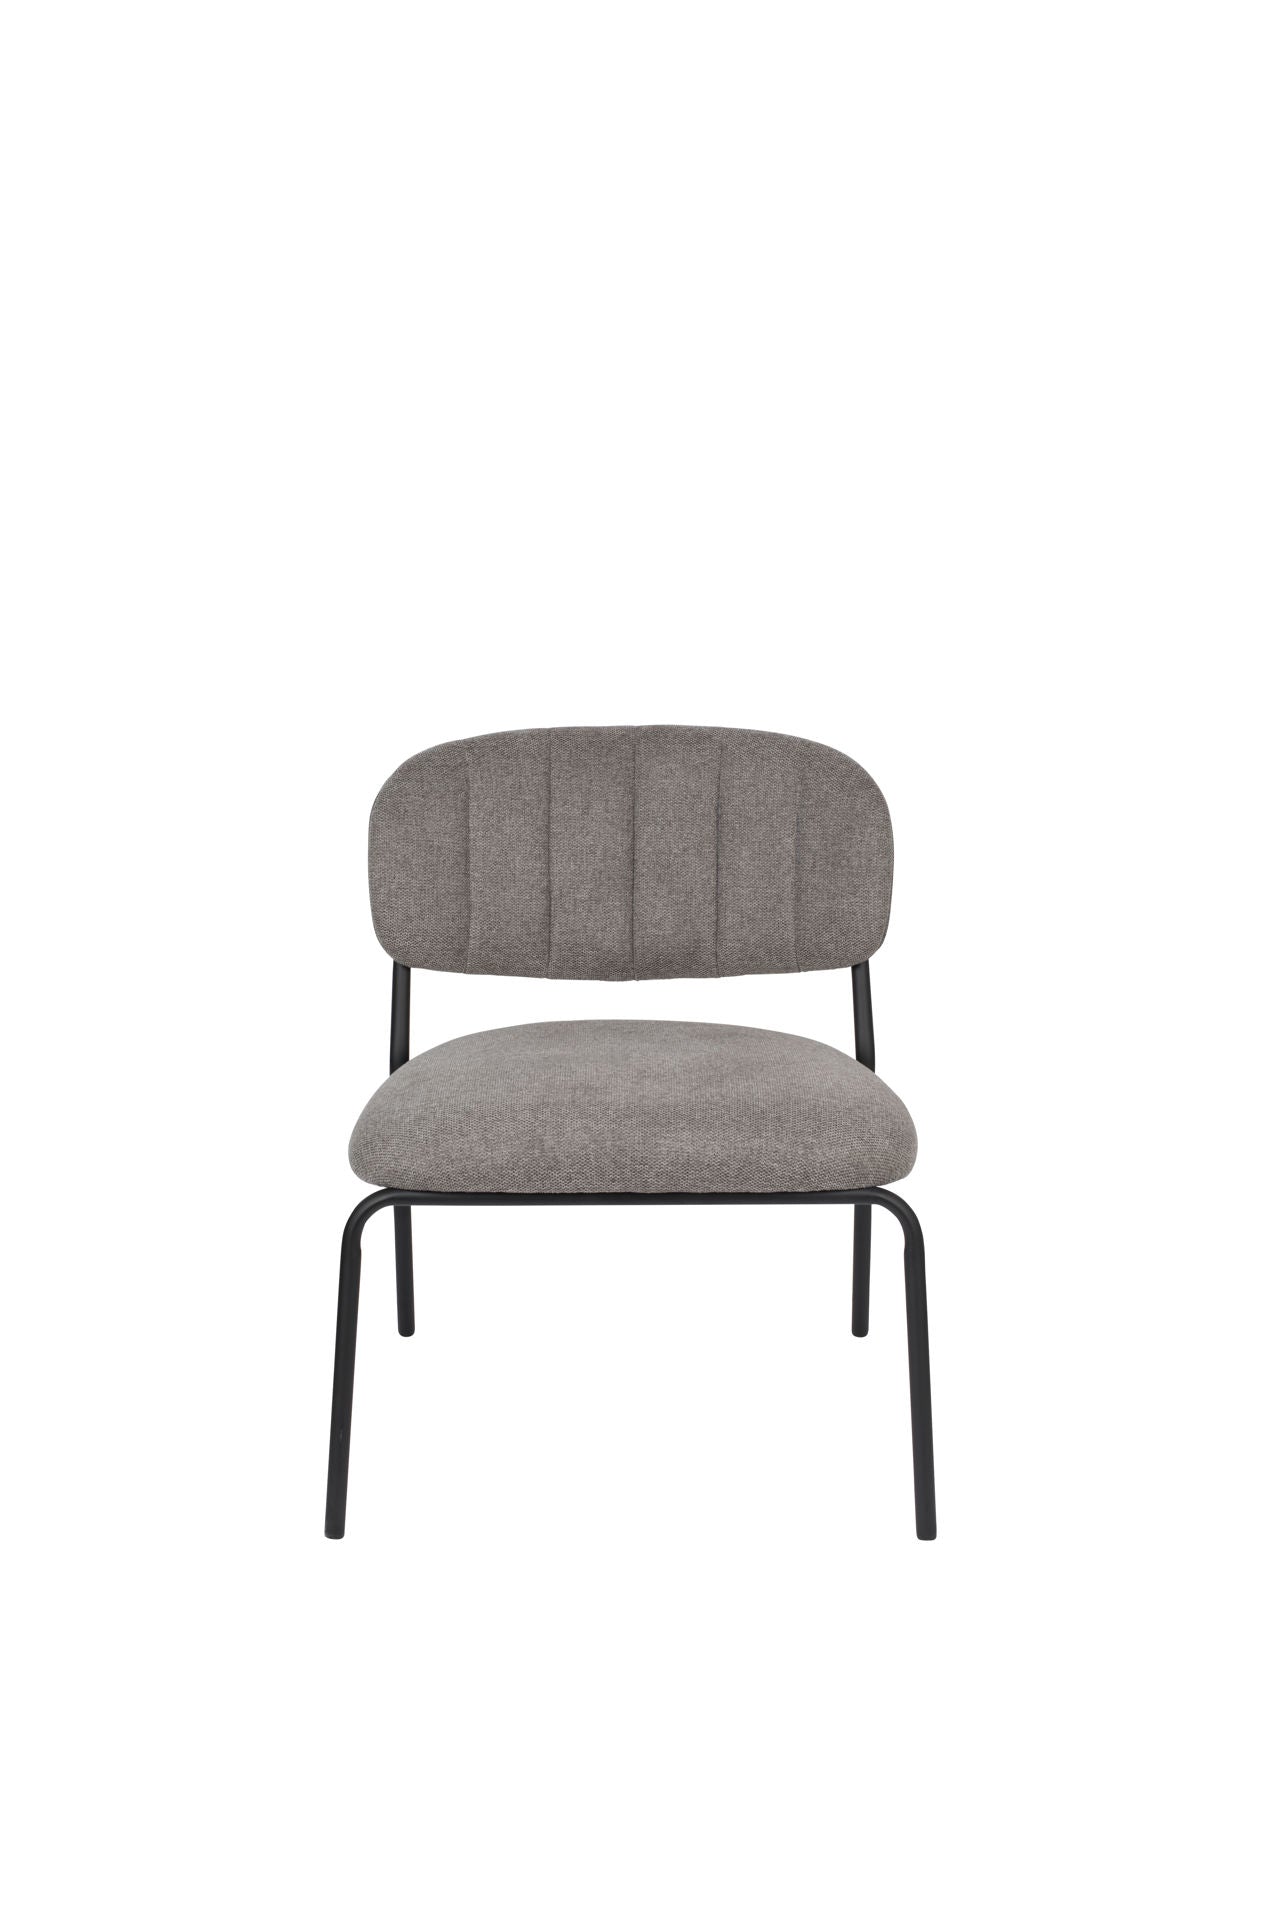 Nancy's Scotts Valley Lounge Chair 2 pièces - Industriel - Gris - Polyester, Contreplaqué, Acier - 60 cm x 56 cm x 68 cm